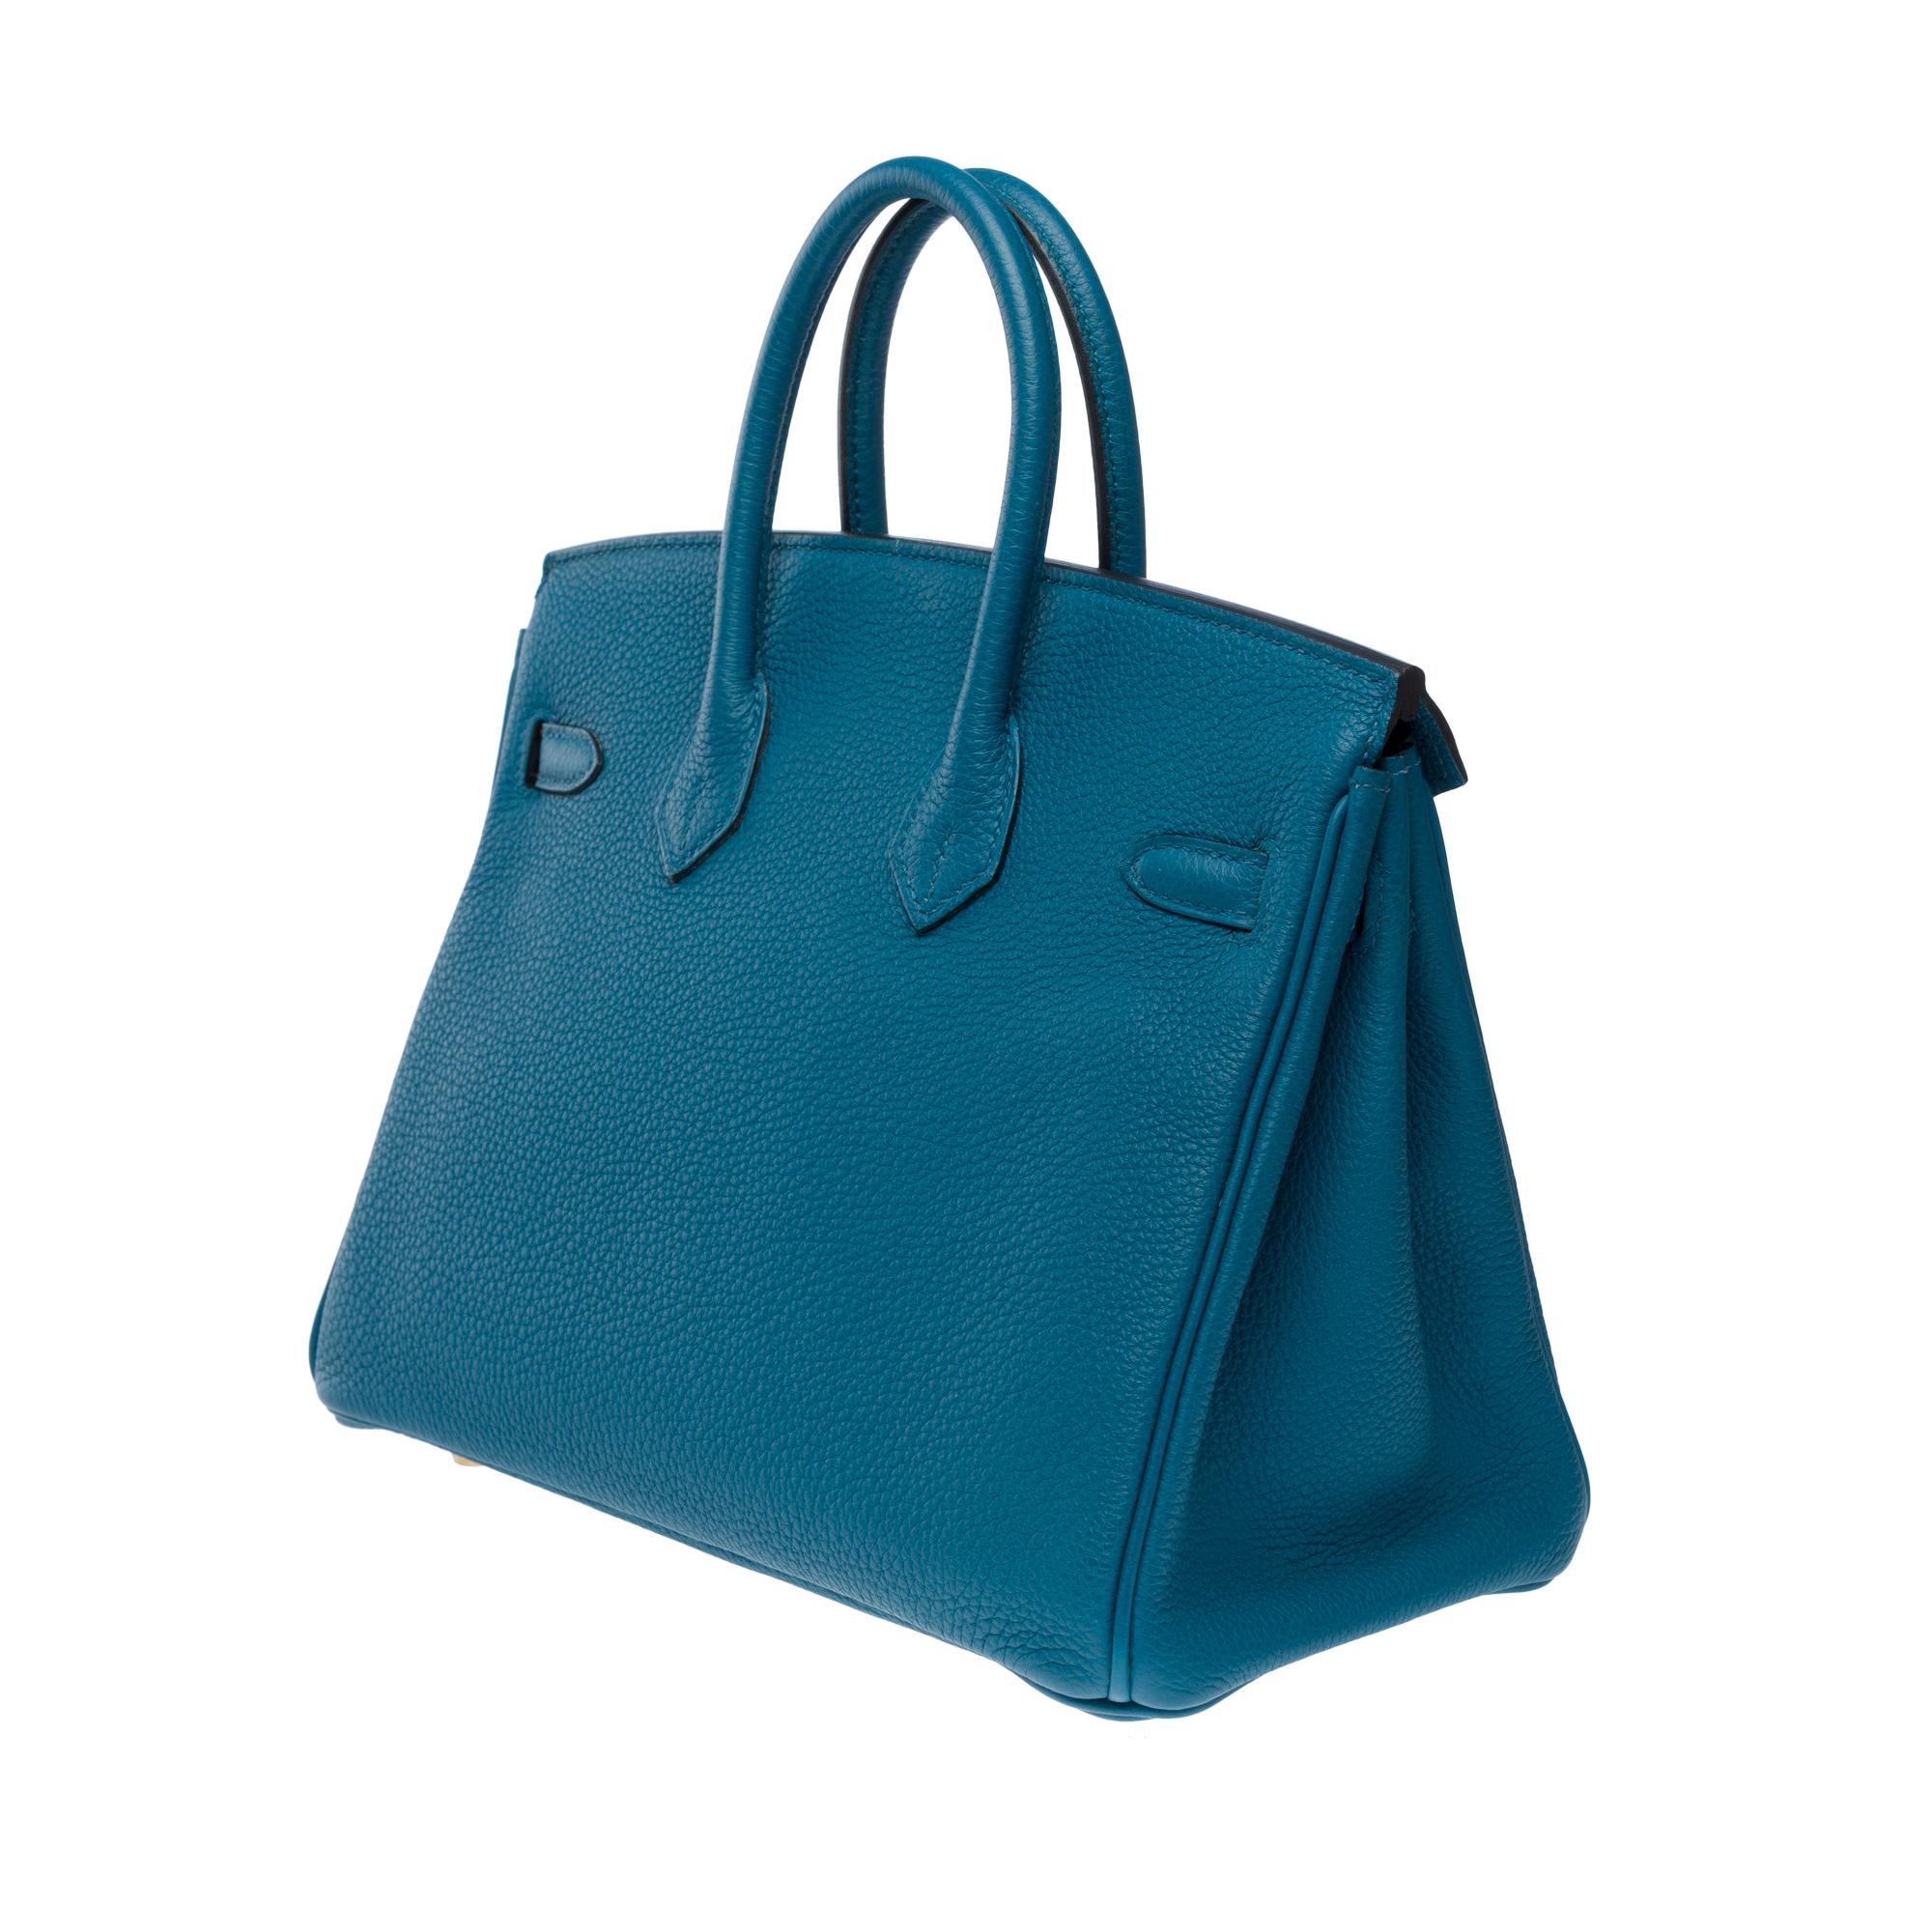 Amazing Hermes Birkin 25cm handbag in Togo Blue Cobalt leather, GHW For Sale 3